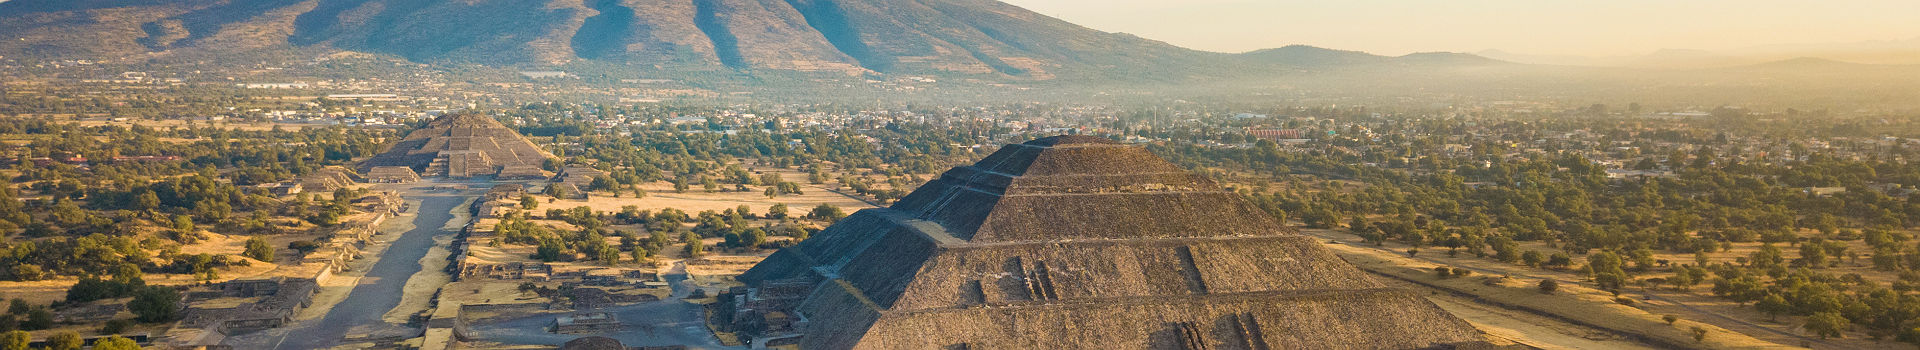 Mexique - Vue sur le site de Teotihuacan dans la vallée de Mexico